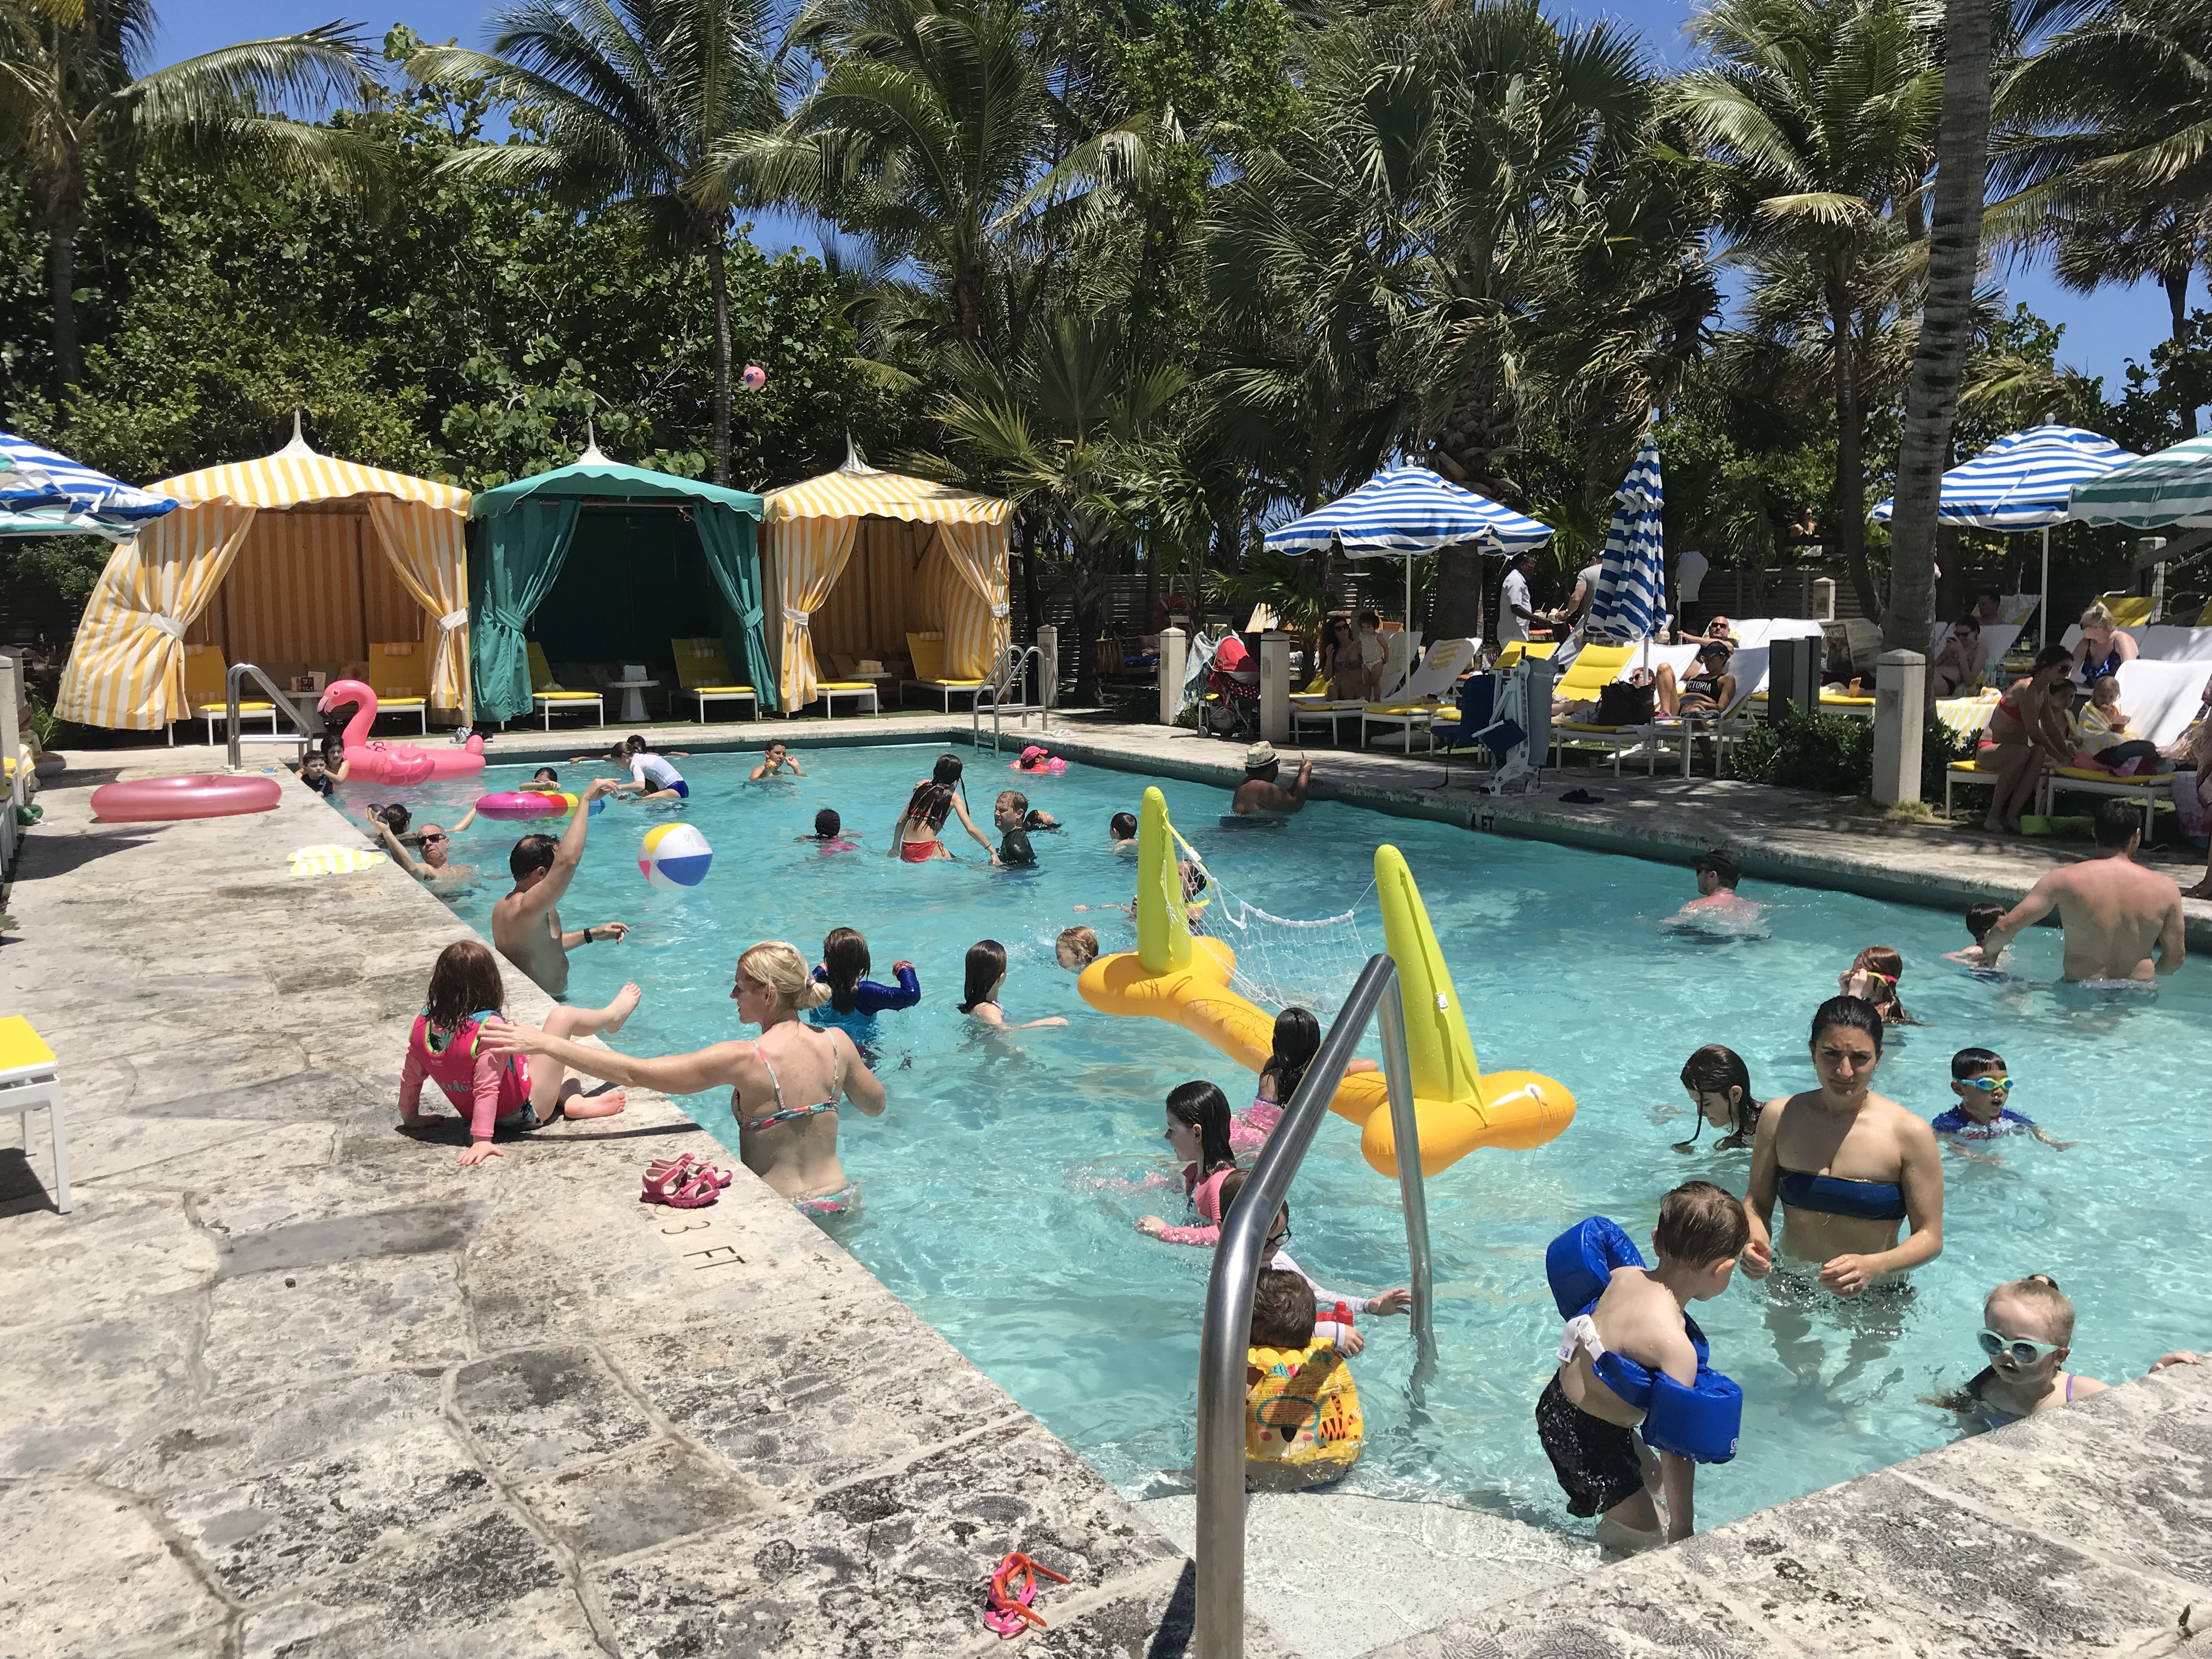 Pool Party - Picture of The Confidante Miami Beach - Tripadvisor